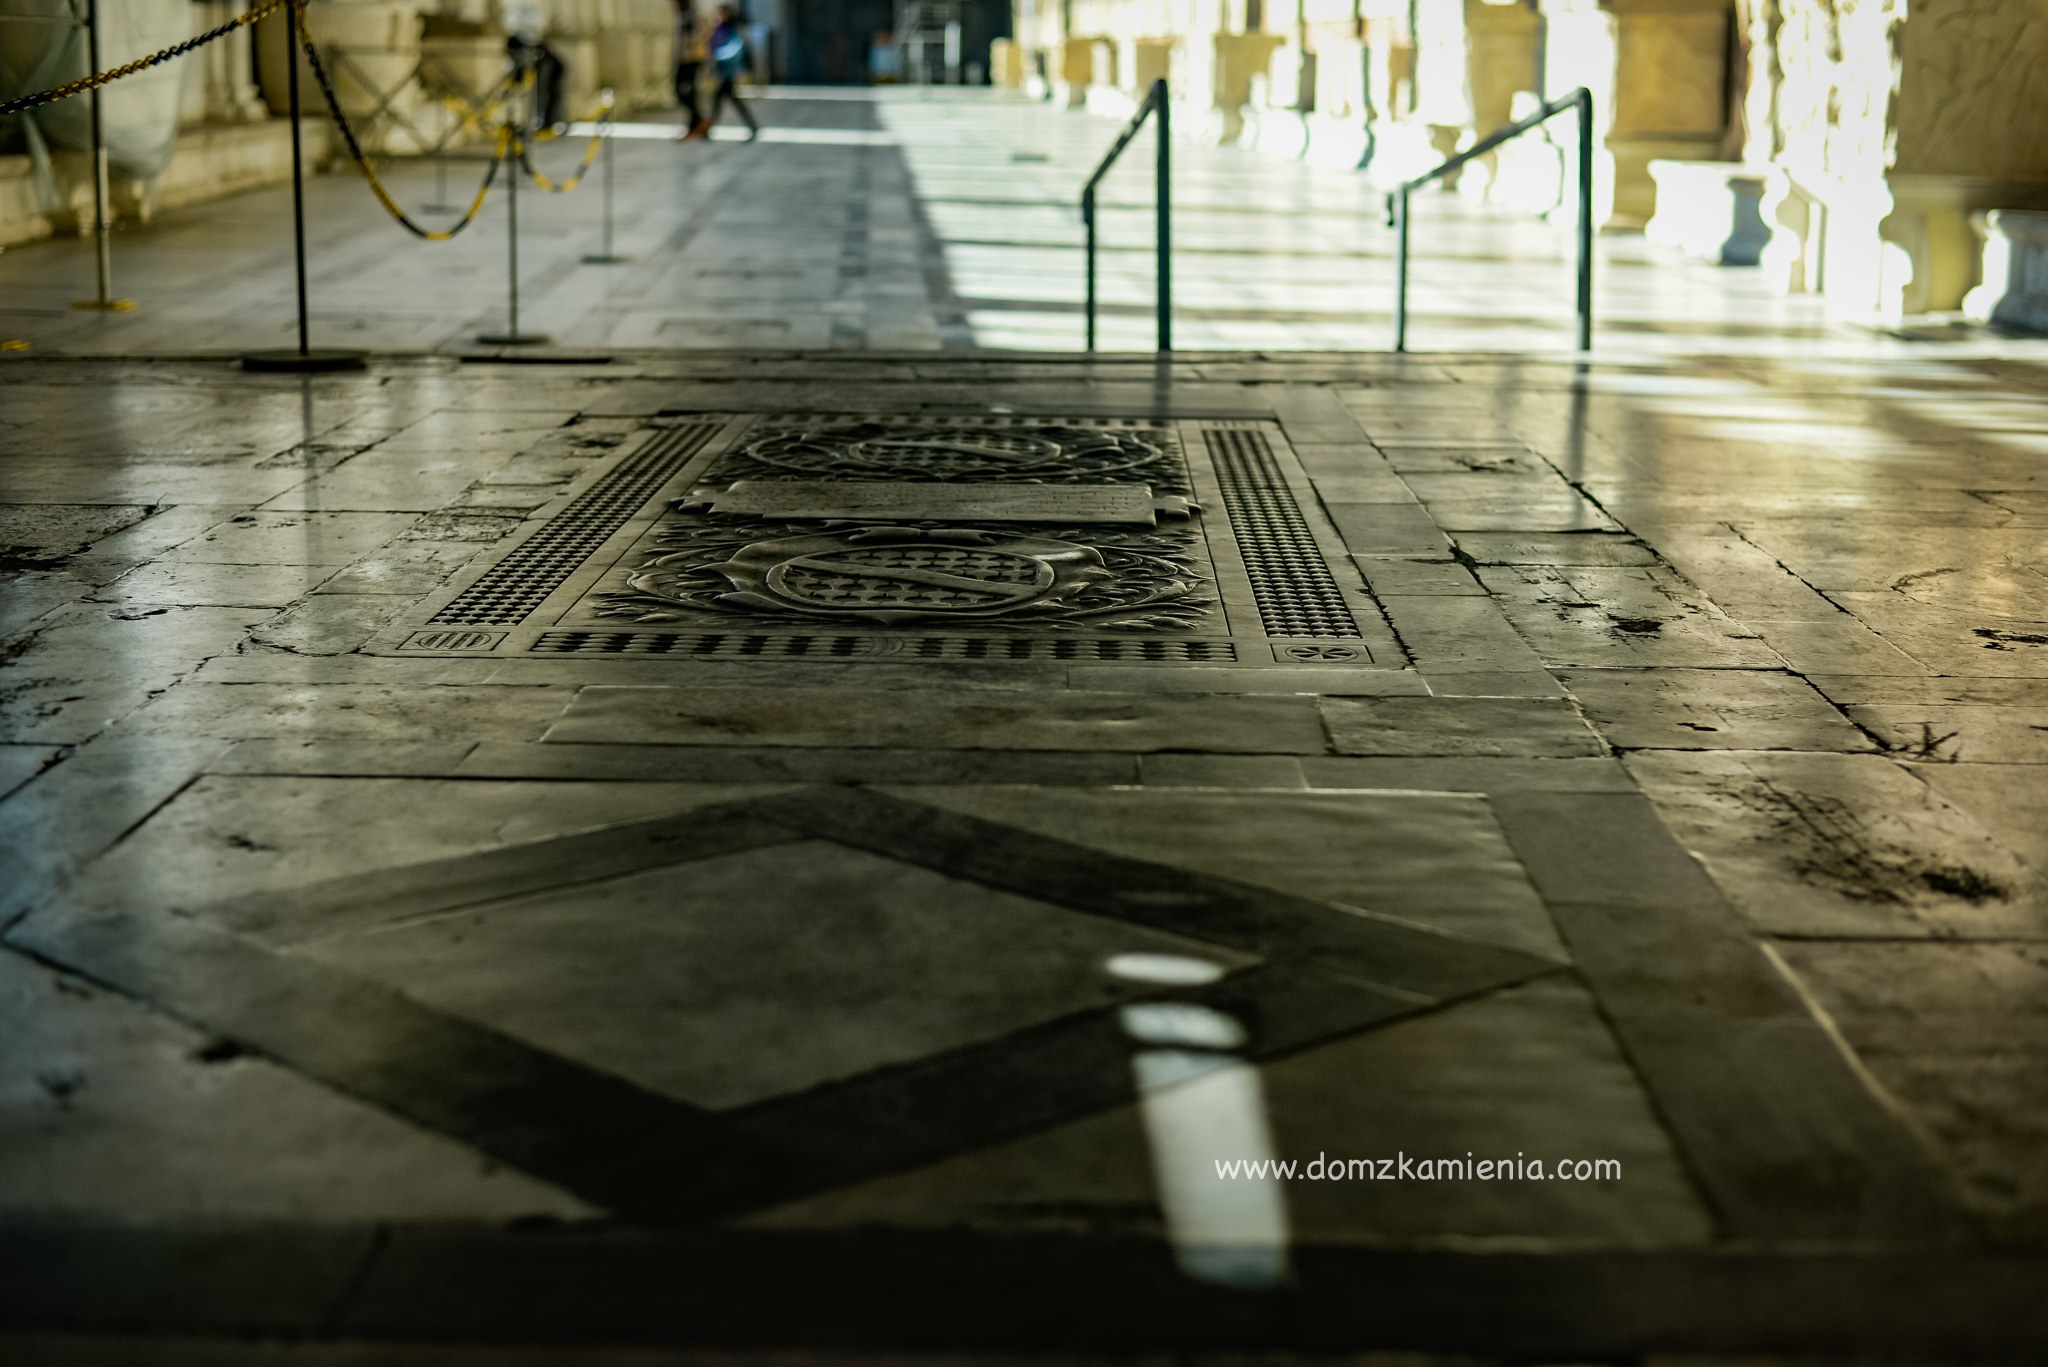 Camposanto i Duomo - co zobaczyć w Pizie